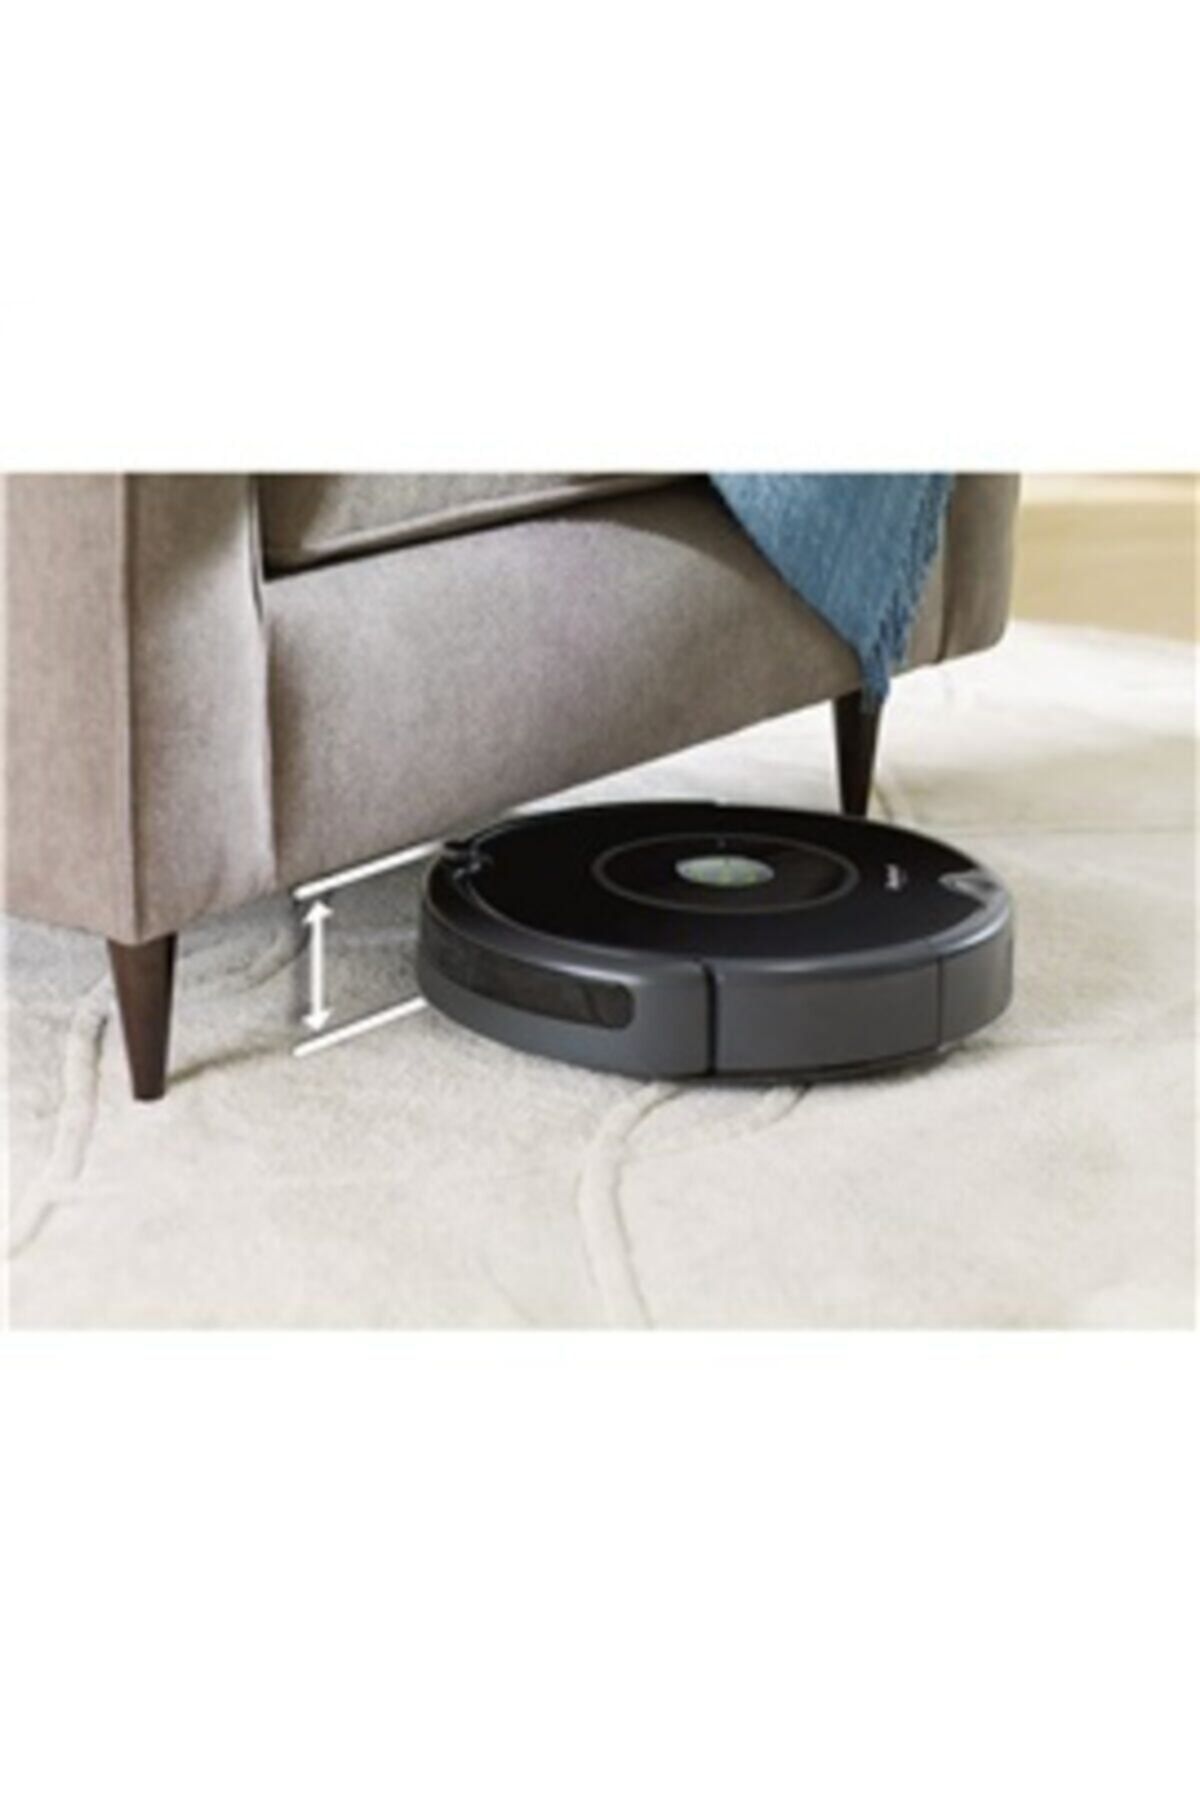 iRobot Roomba 606 Robot Süpürge Kullanıcı Yorumları, Fiyatı - Trendyol